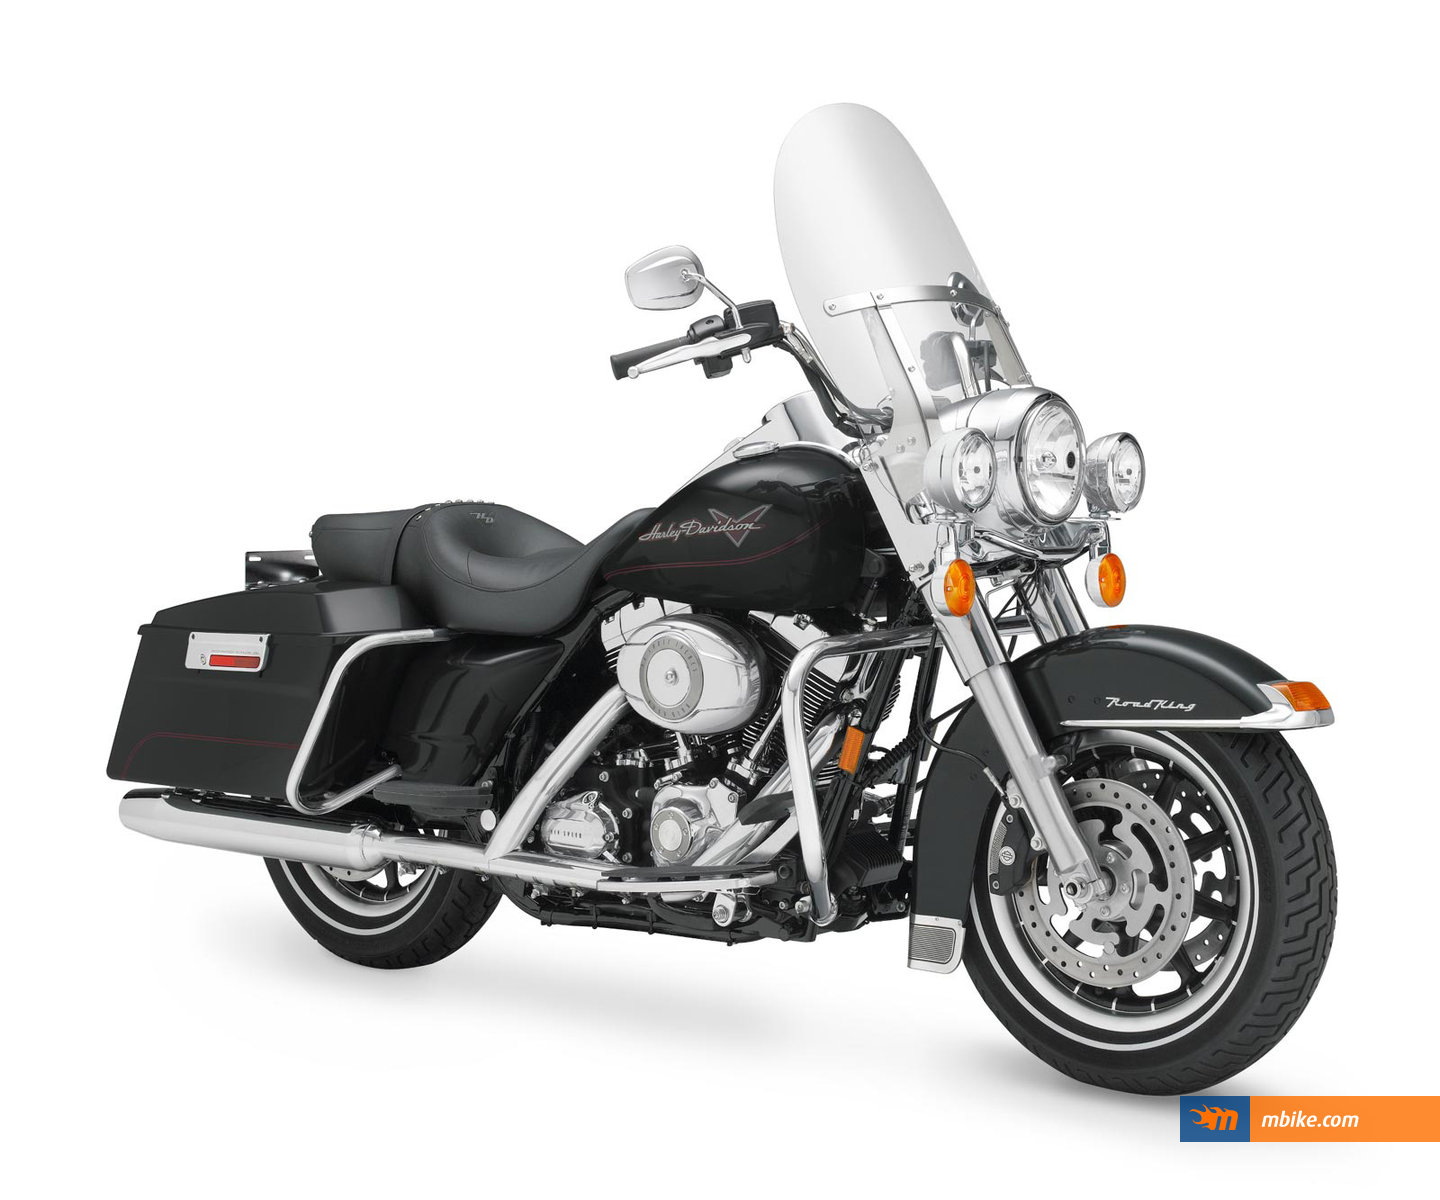 2008 Harley-Davidson FLHR Road King